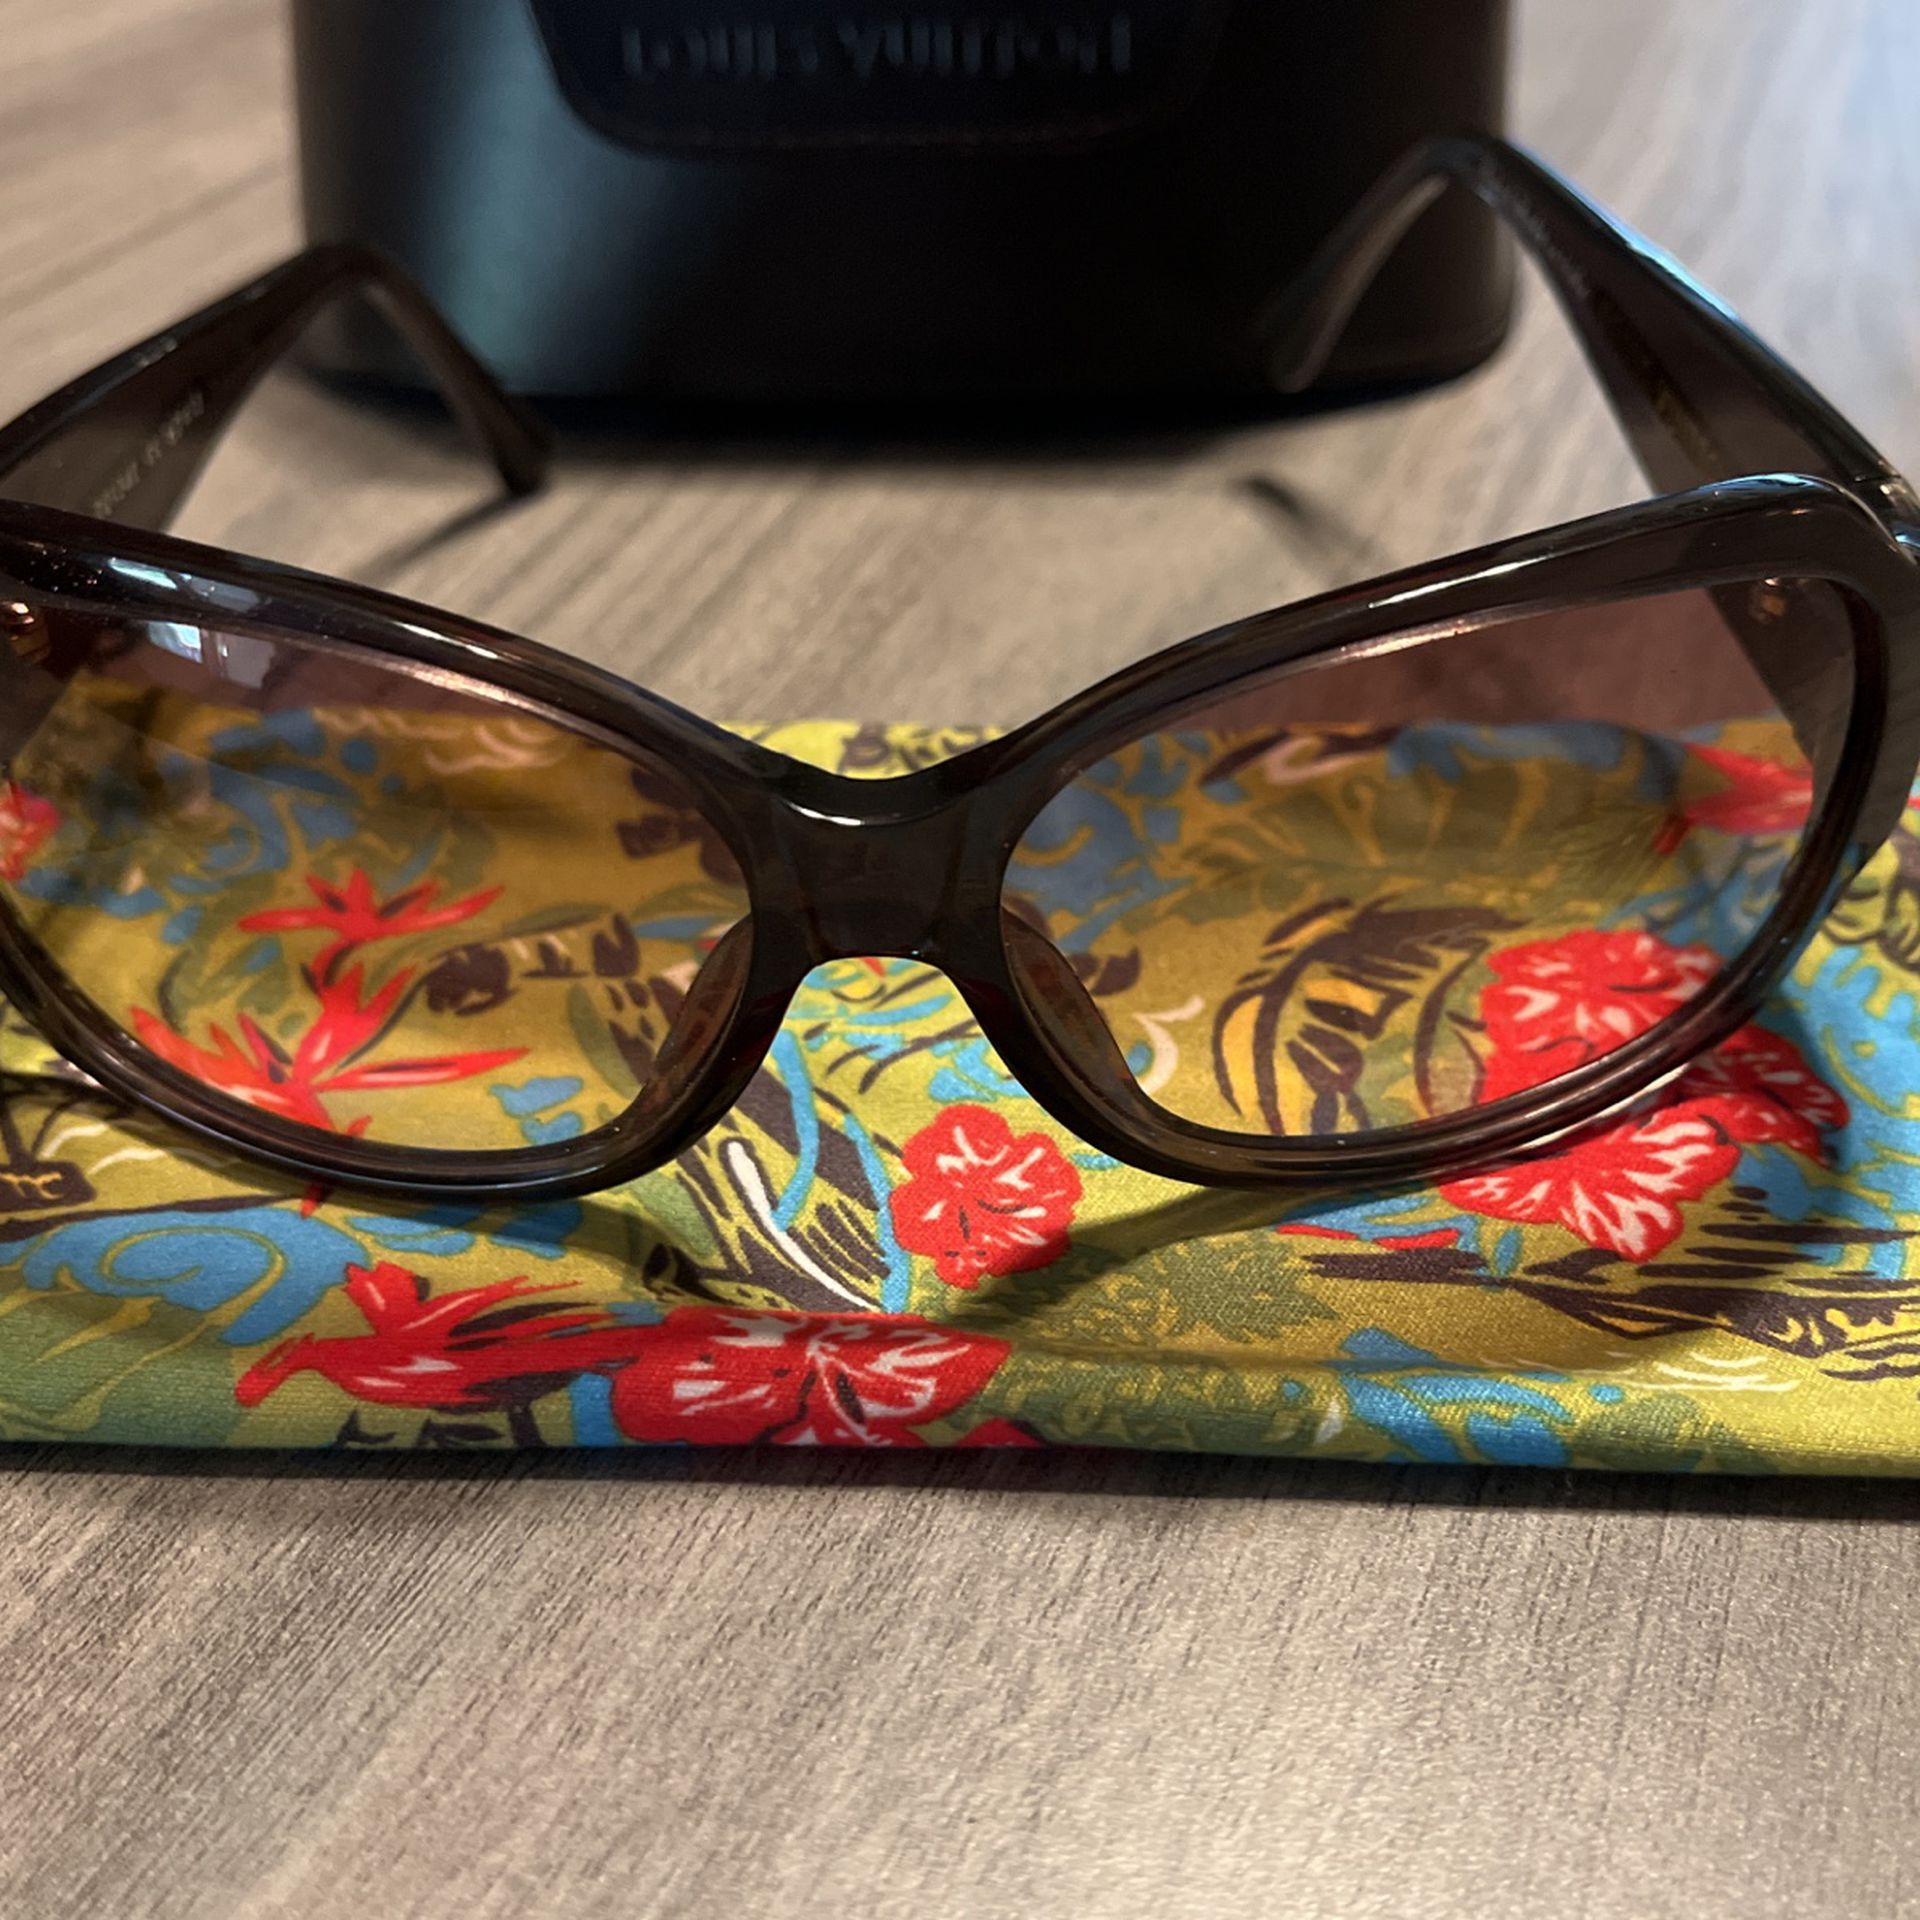 Louis Vuitton Sunglasses Ursula Truss Glitter Z0134E for Sale in Corona, CA  - OfferUp